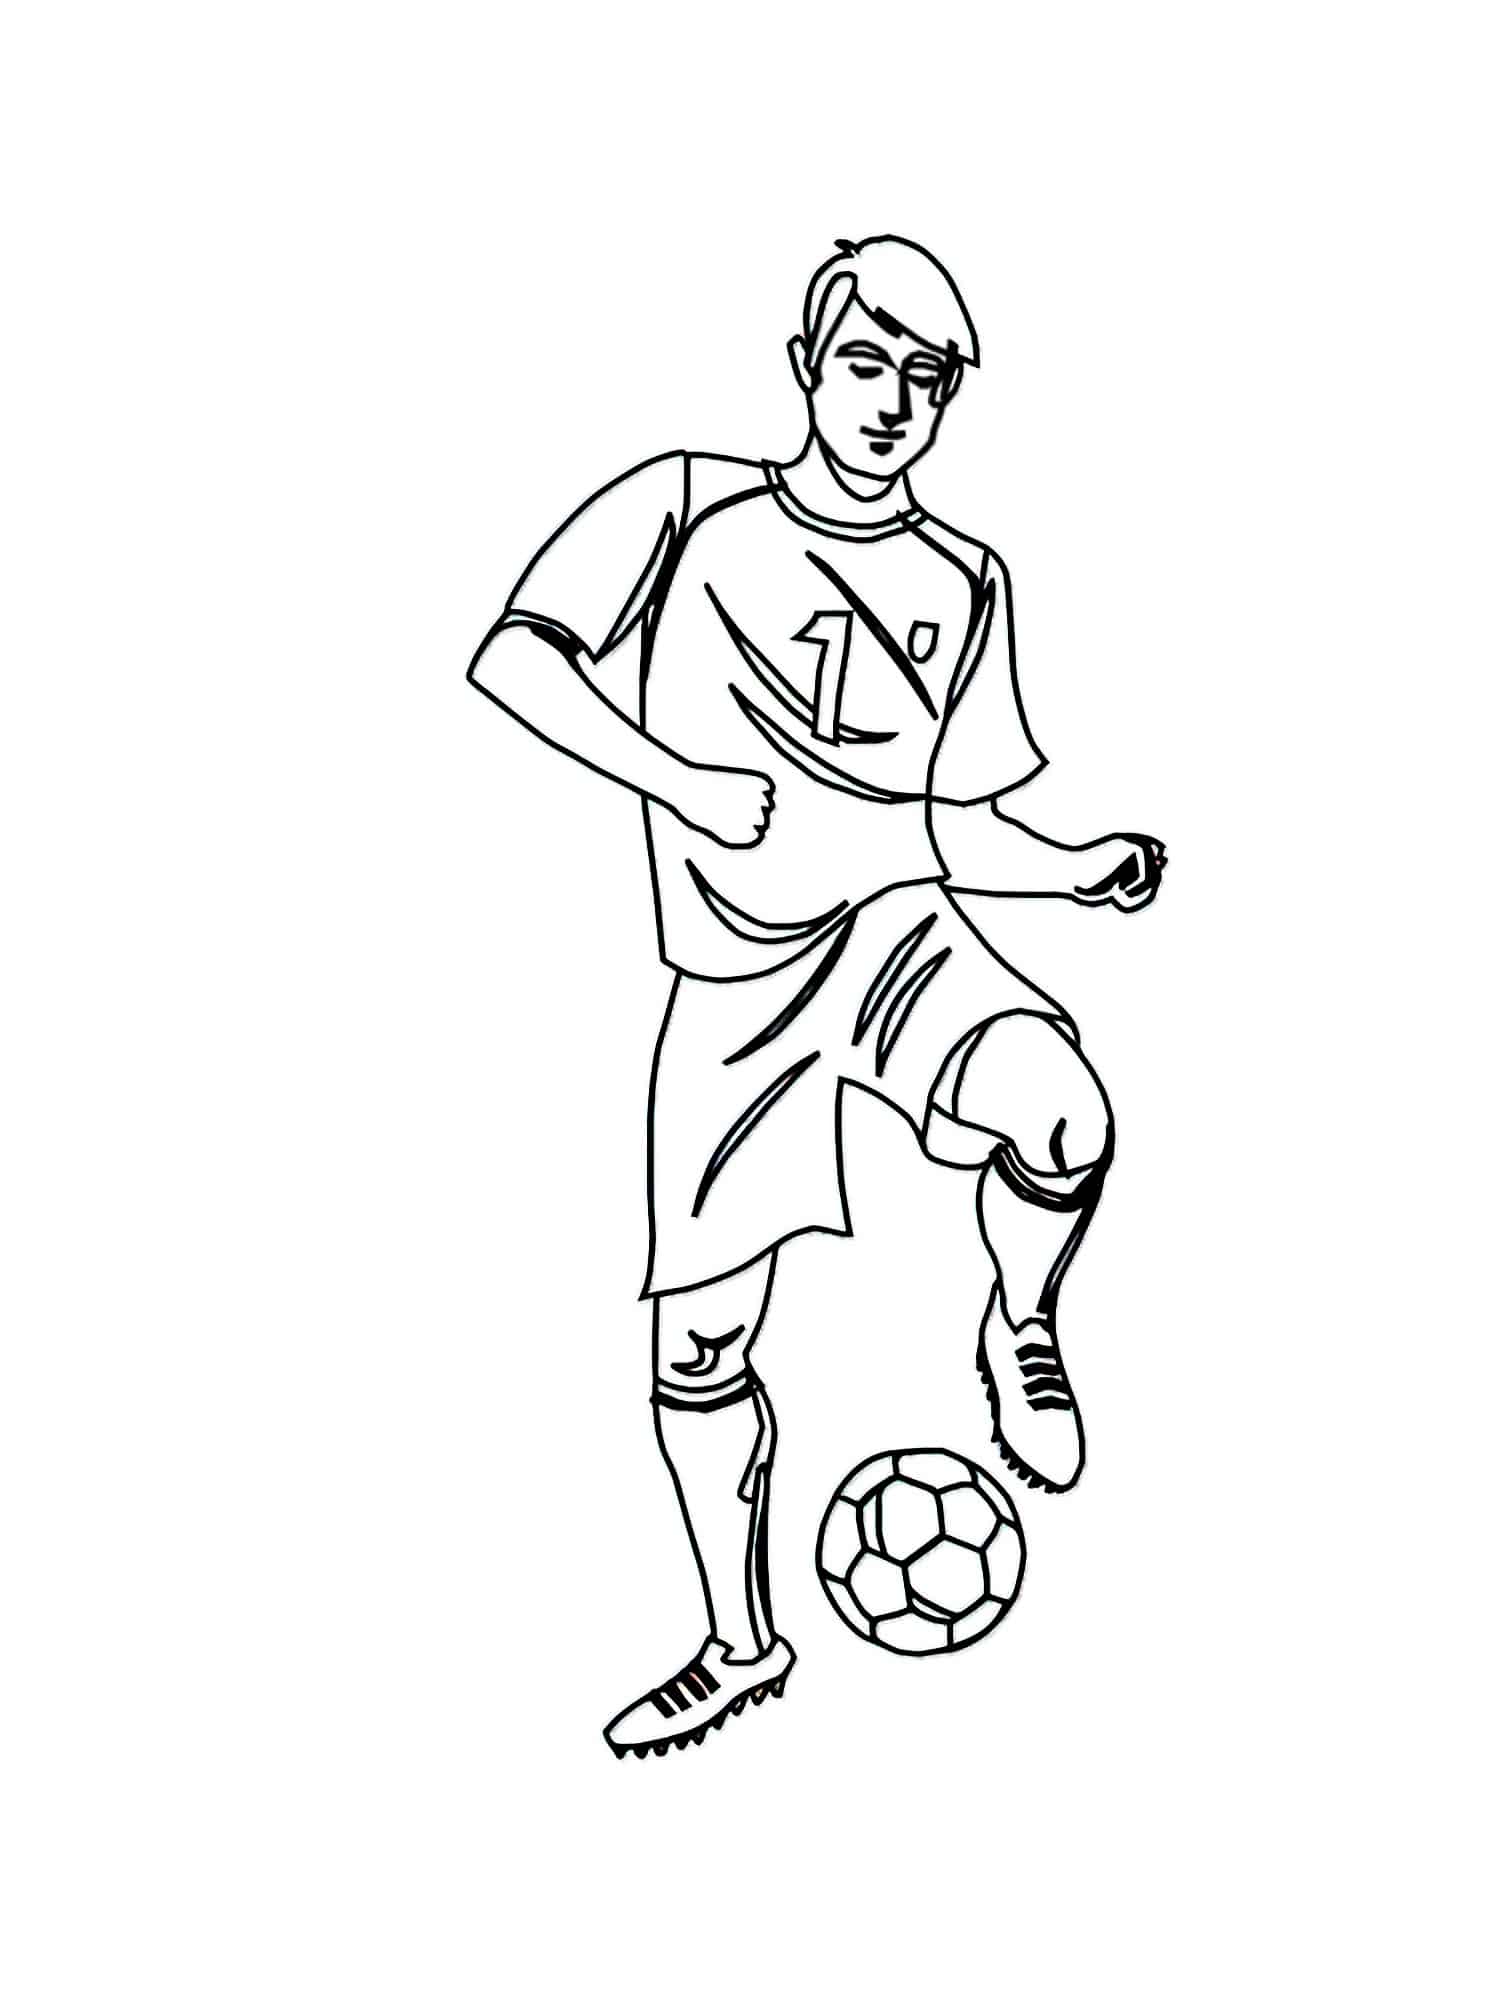 דף צביעה שחקן הכדורגל לוקח את הכדור